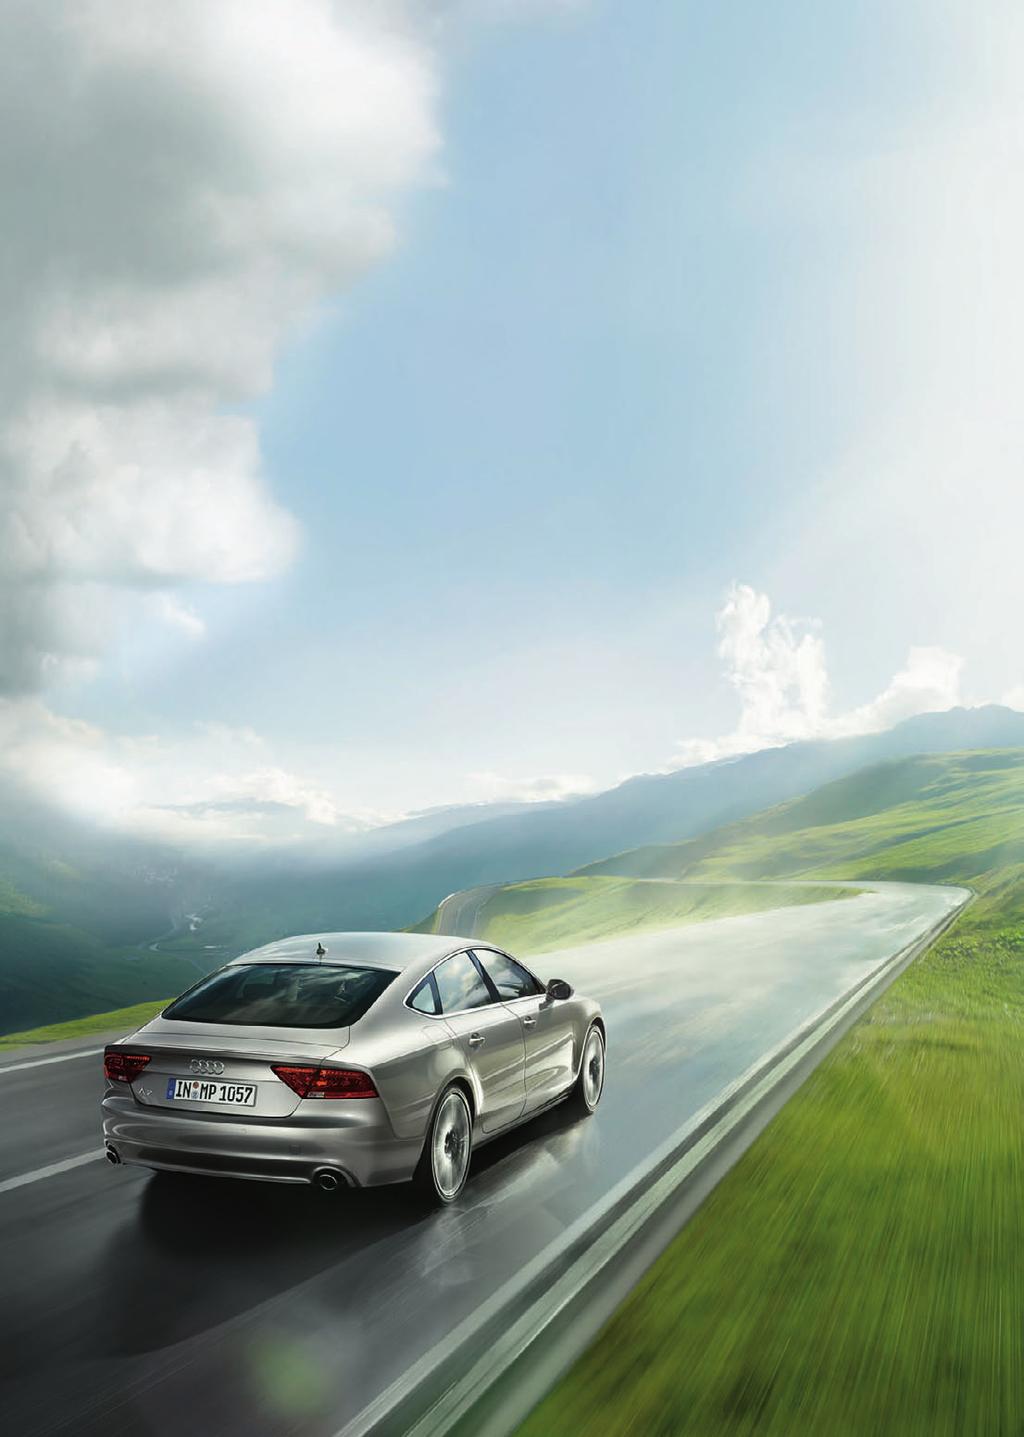 Audi Service 80 % Regenwahrscheinlichkeit 100 % darauf vorbereitet Vereinbaren Sie jetzt bei uns einen Termin zum Audi CarCheck Frühling.